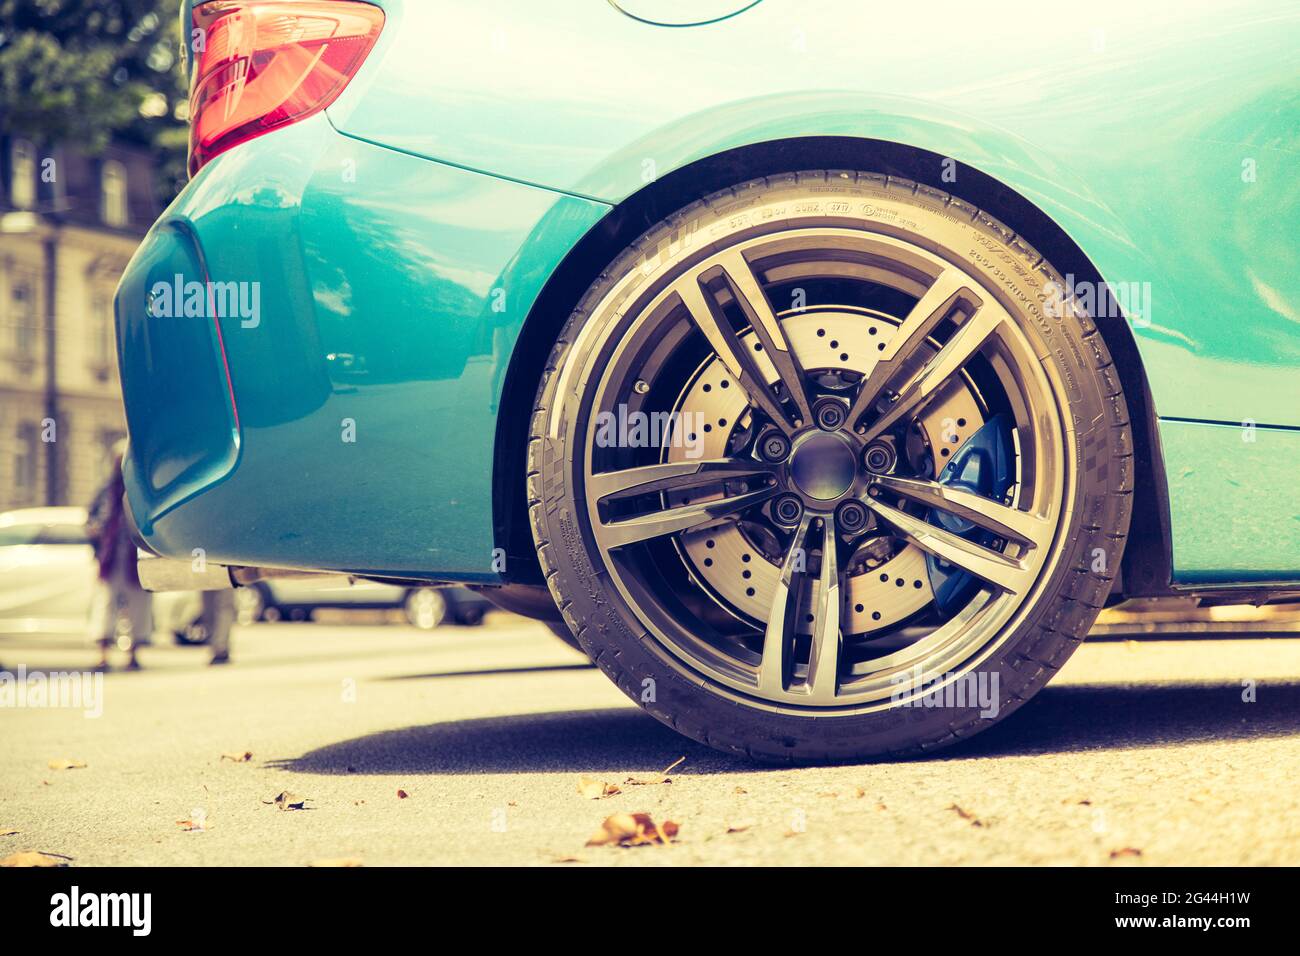 Car-Felge-Konzept: Nahaufnahme der teuren Car-Felge mit perforierten vorderen Bremsscheiben Stockfoto